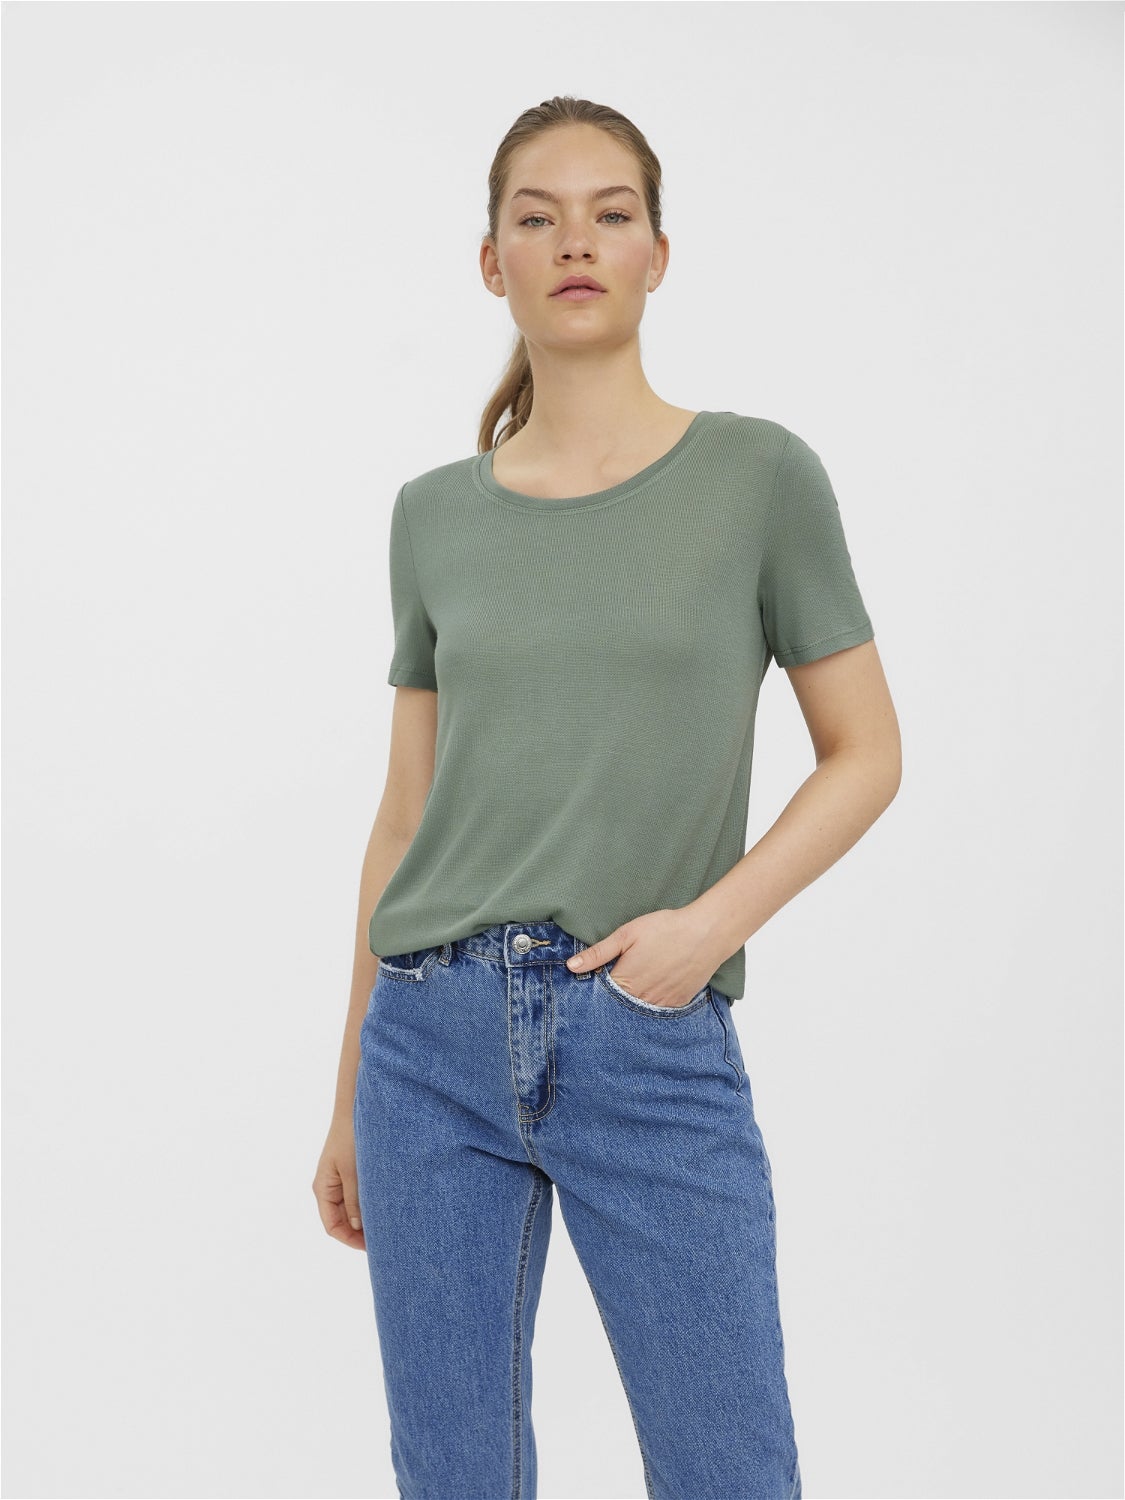 Vero Moda T-Shirt Grün M Rabatt 56 % DAMEN Hemden & T-Shirts Stricken 